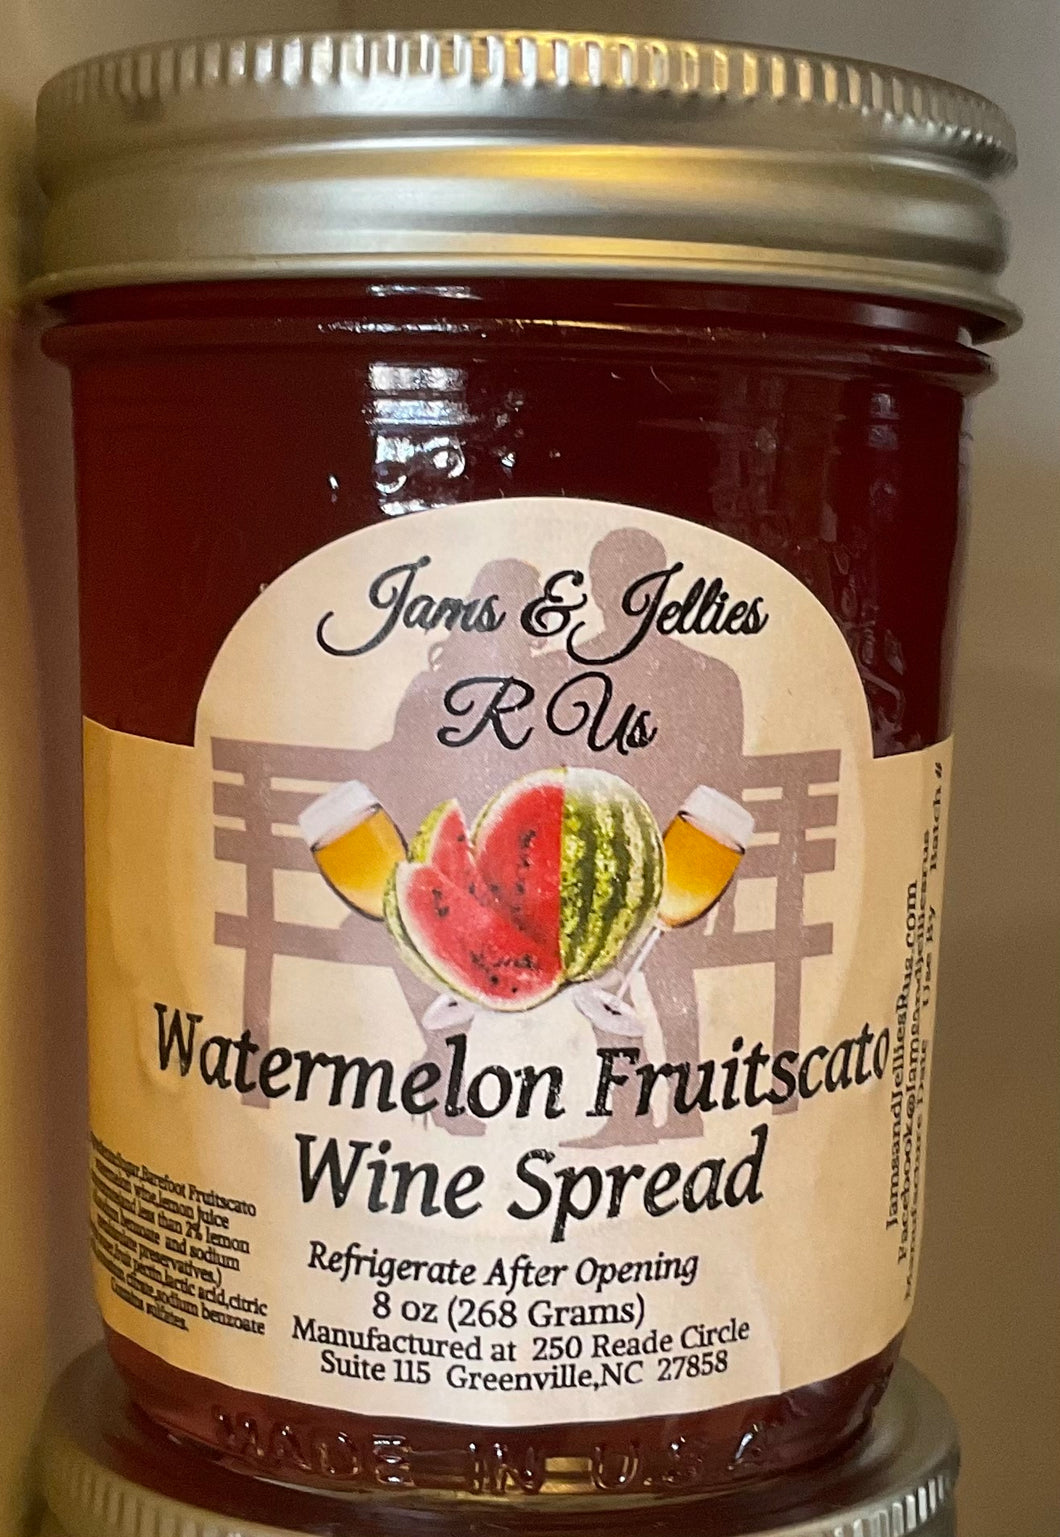 Watermelon Fruitscato Wine Spread 8 oz.